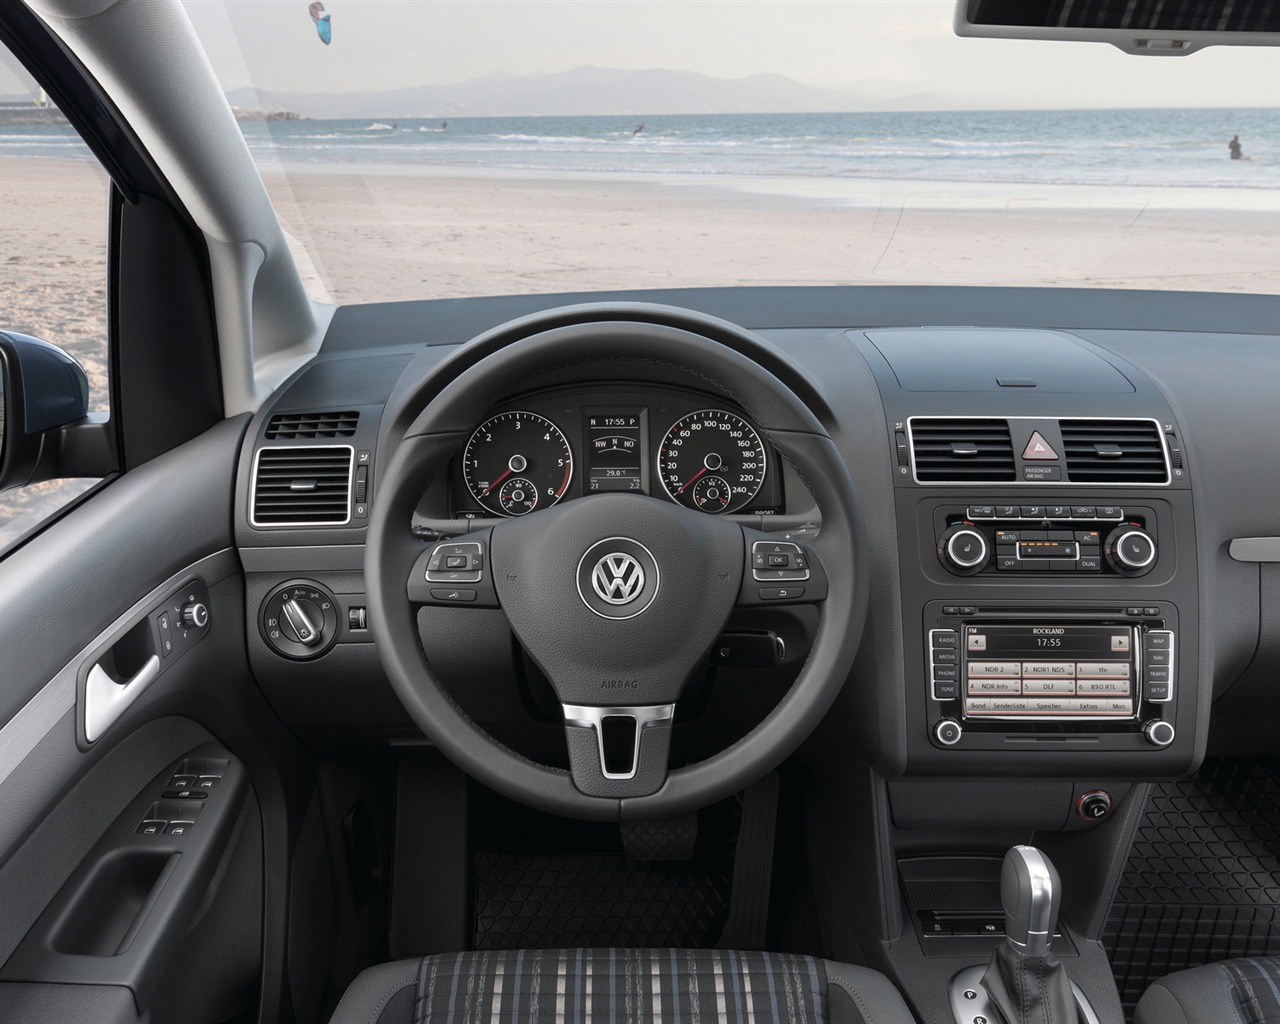 Volkswagen CrossTouran - 2010 大众14 - 1280x1024